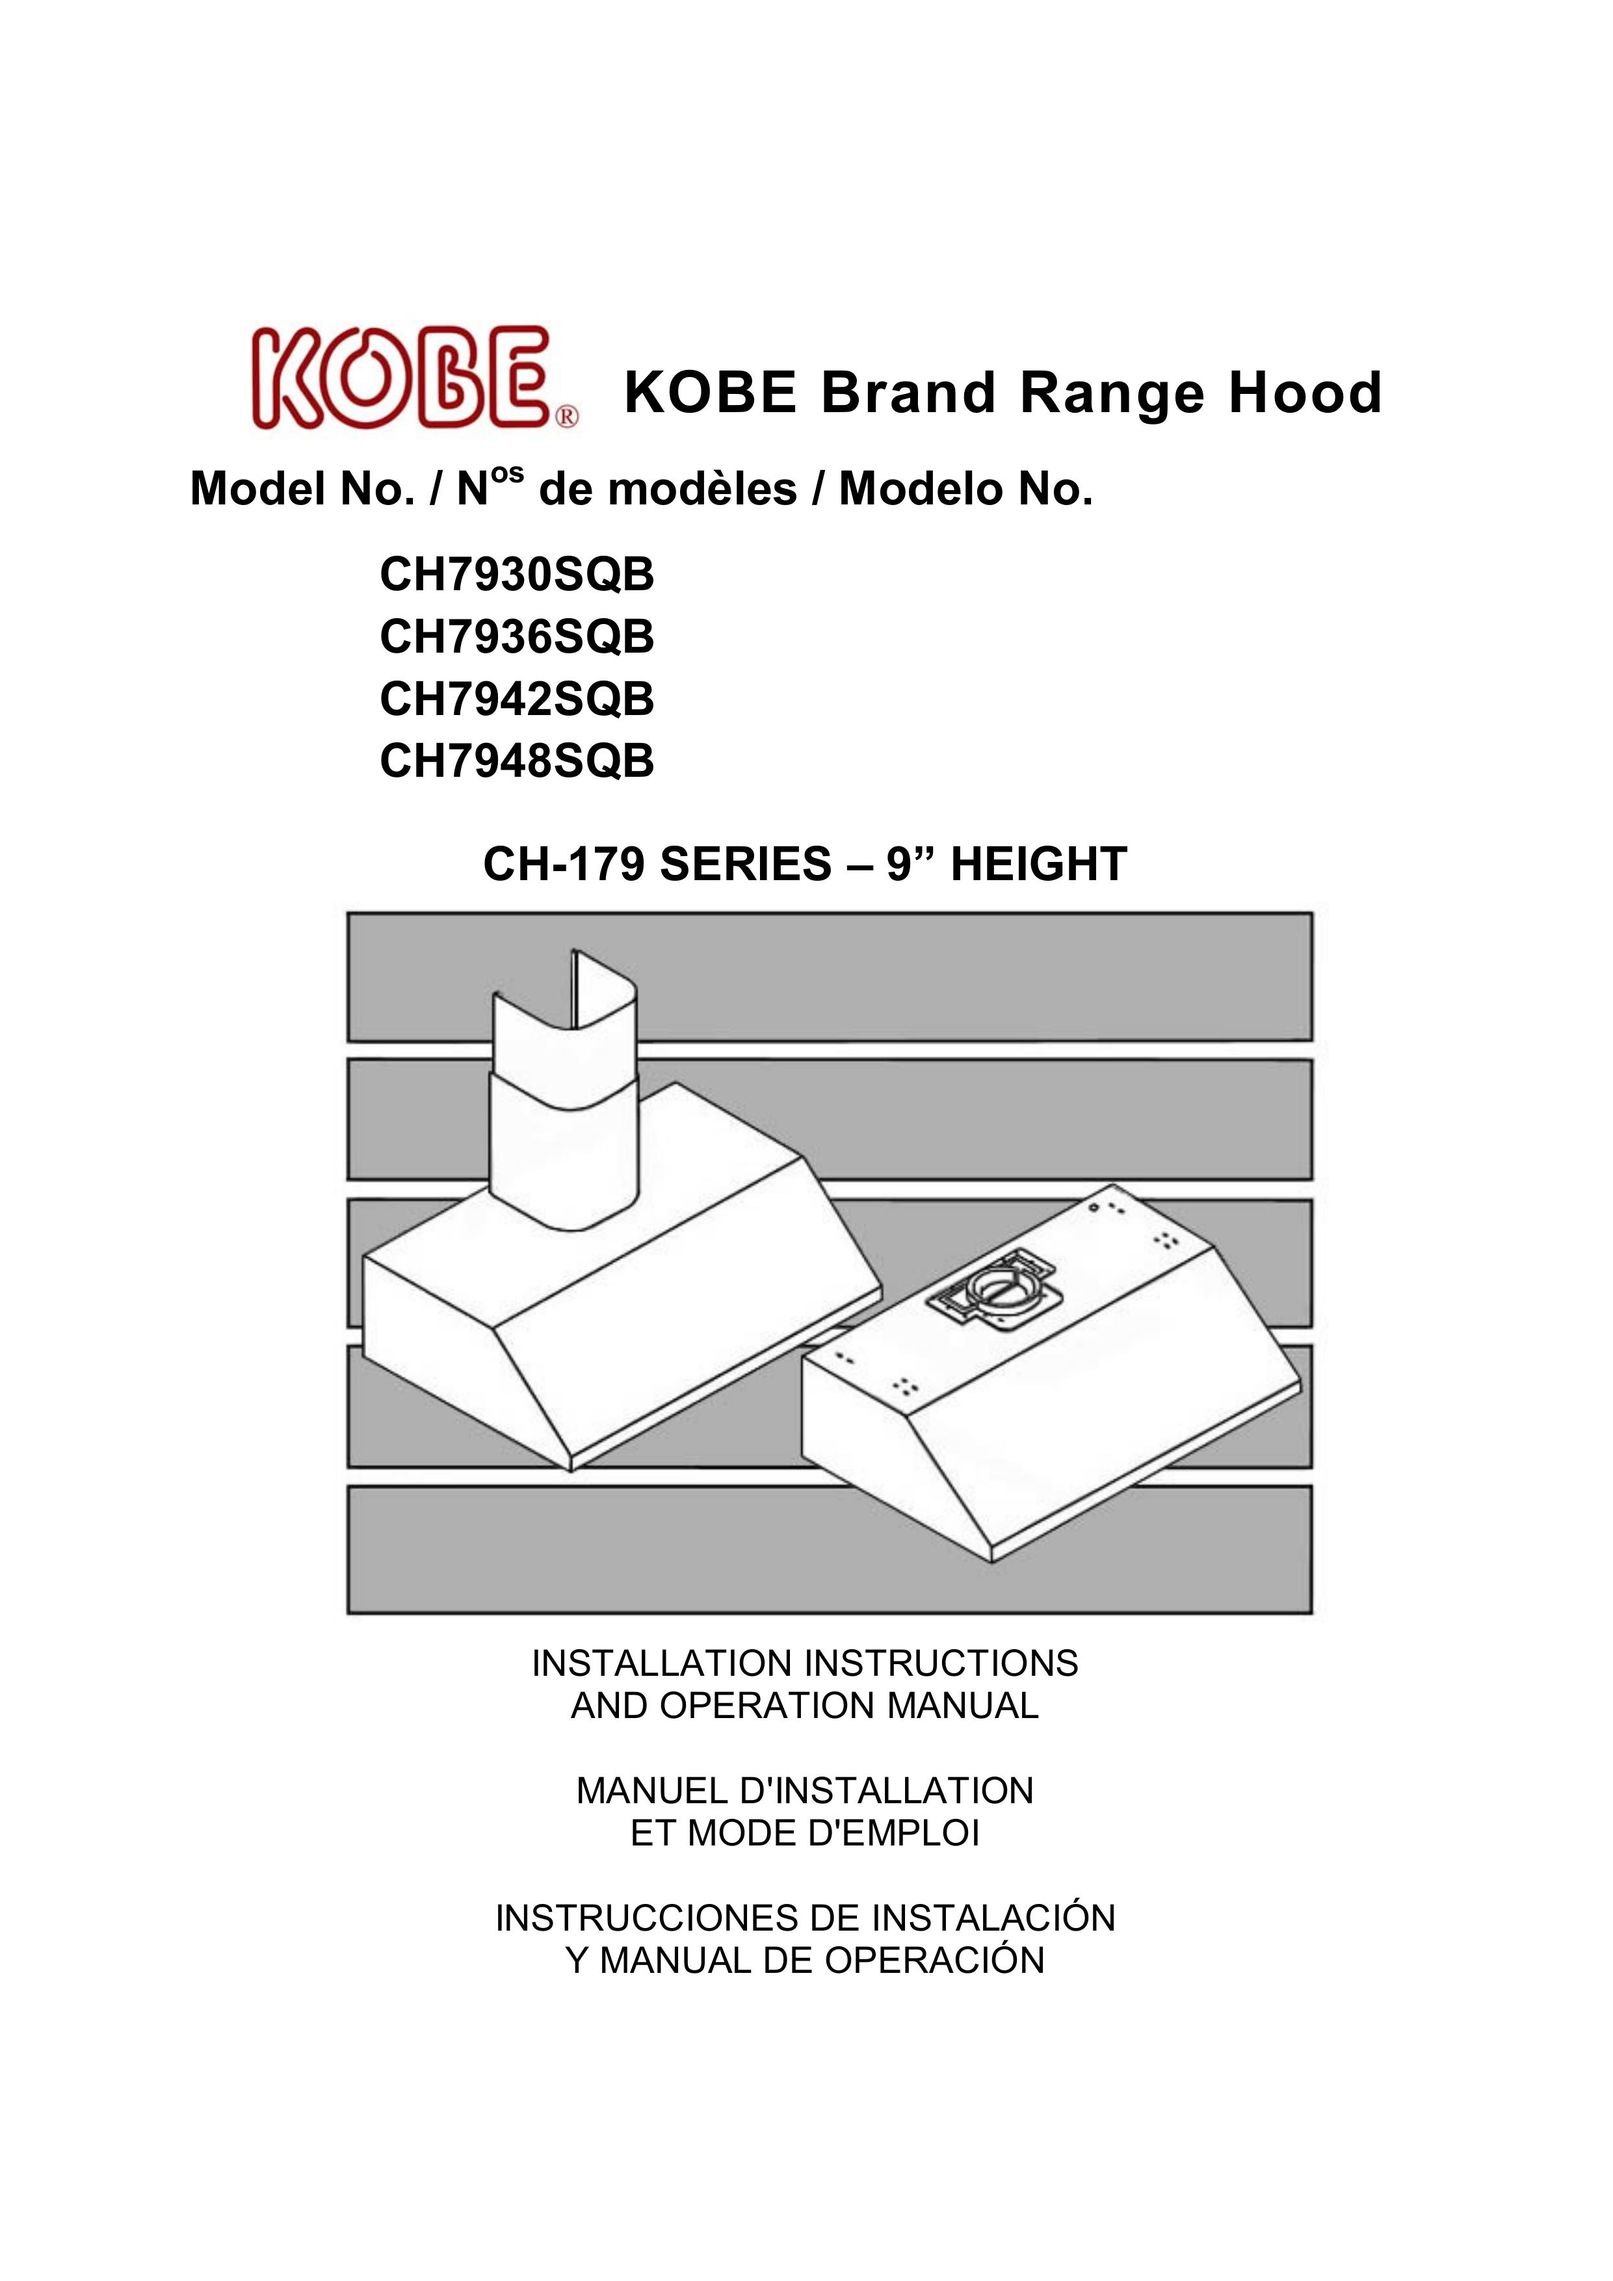 Kobe Range Hoods CH7942SQB Elliptical Trainer User Manual